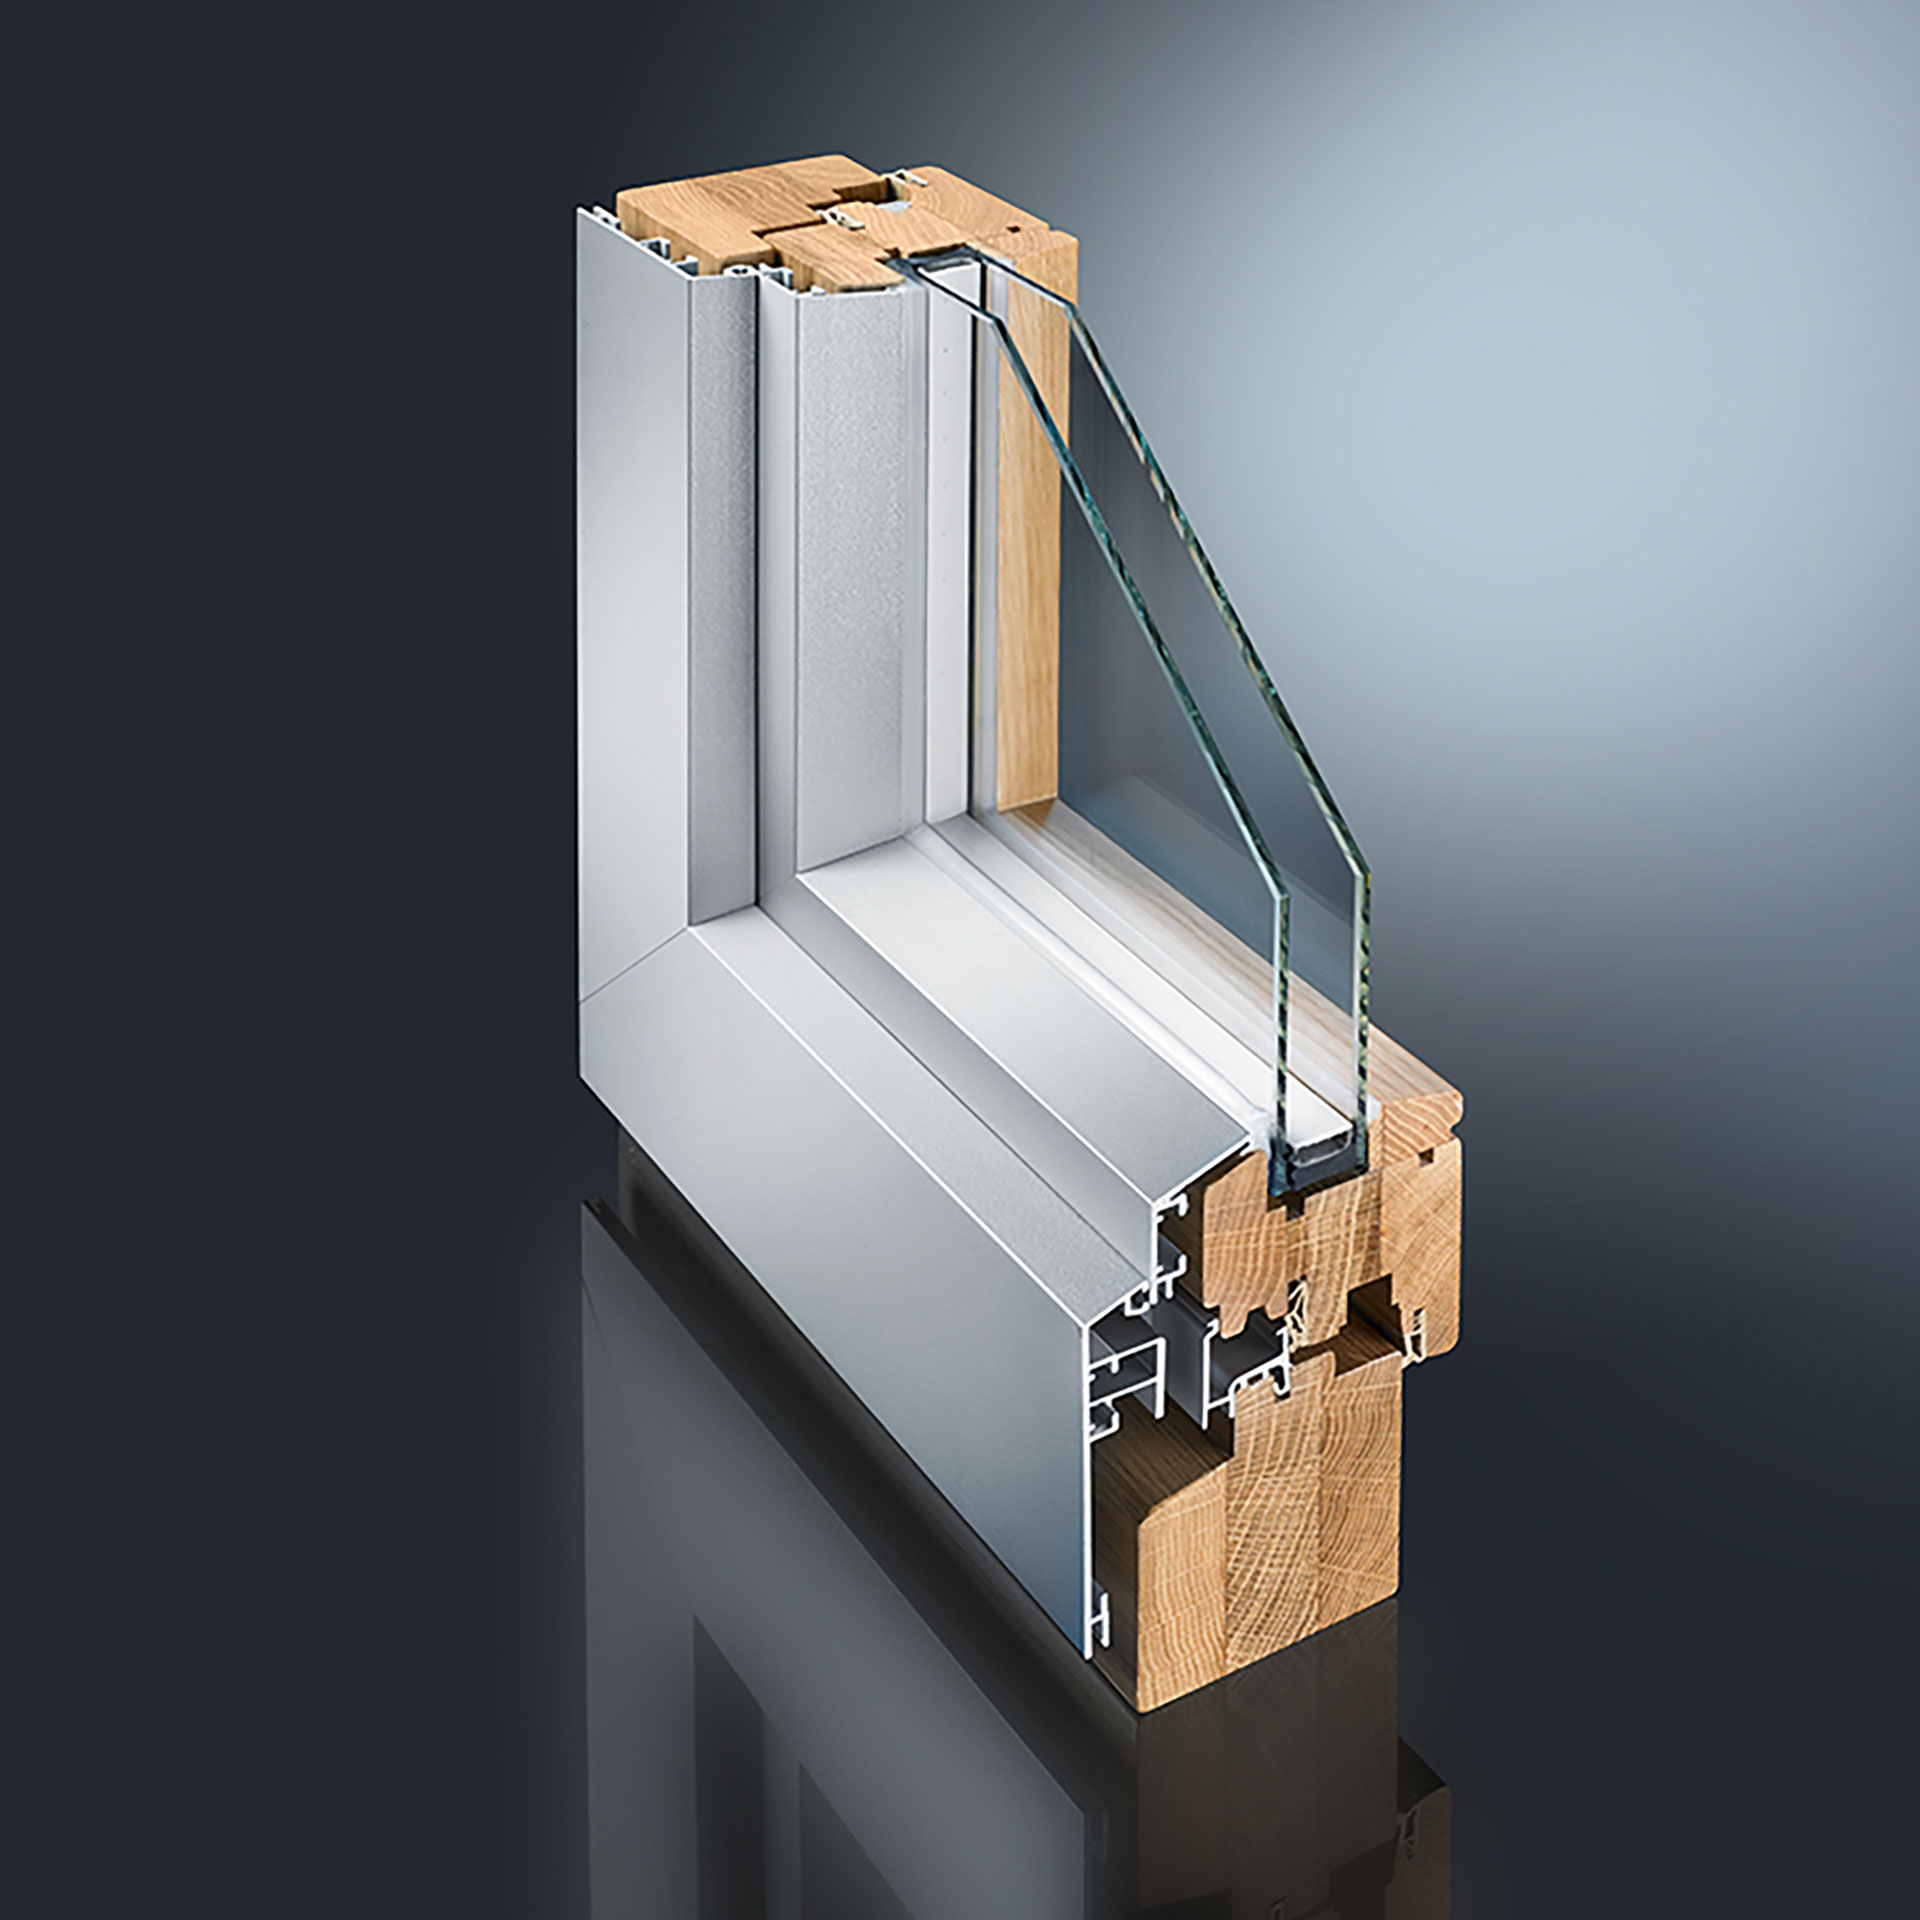 Das System-Profil CORA ist ein leistungsstarkes, vielseitiges Aluminiumsystem. Damit lassen sich Fenster dauerhaft modernisieren und schützen. Holzfenster können einfach und schnell mit einem Witterungsschutz in ansprechender Optik ausgestattet werden.